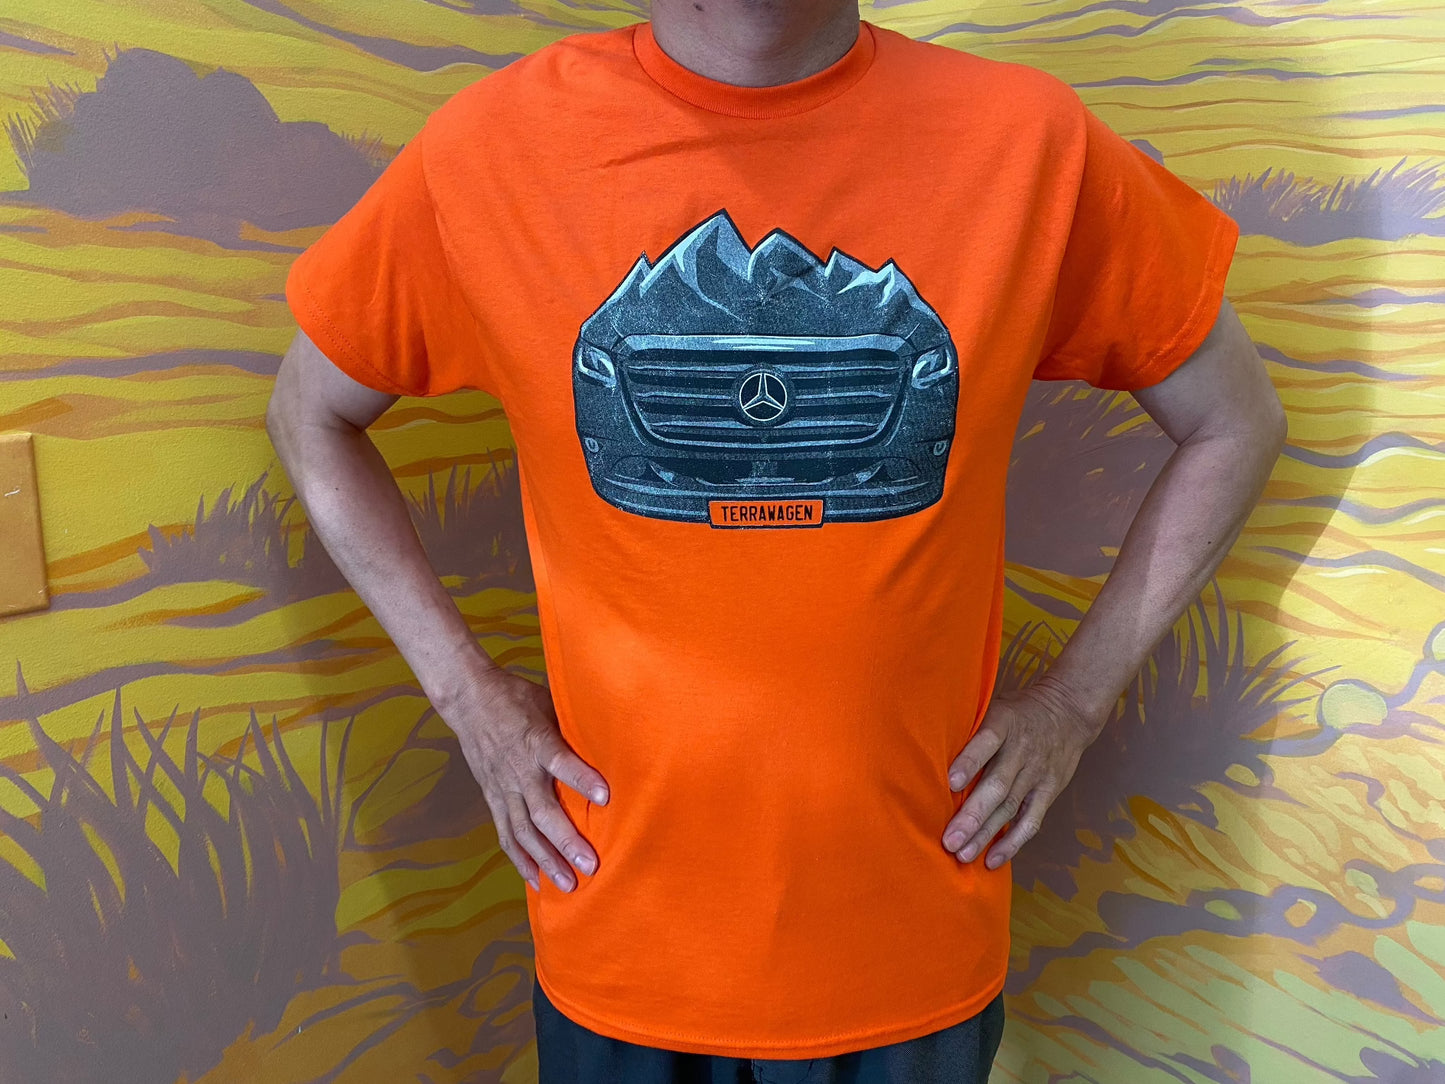 Terrawagen T-shirt Grill design